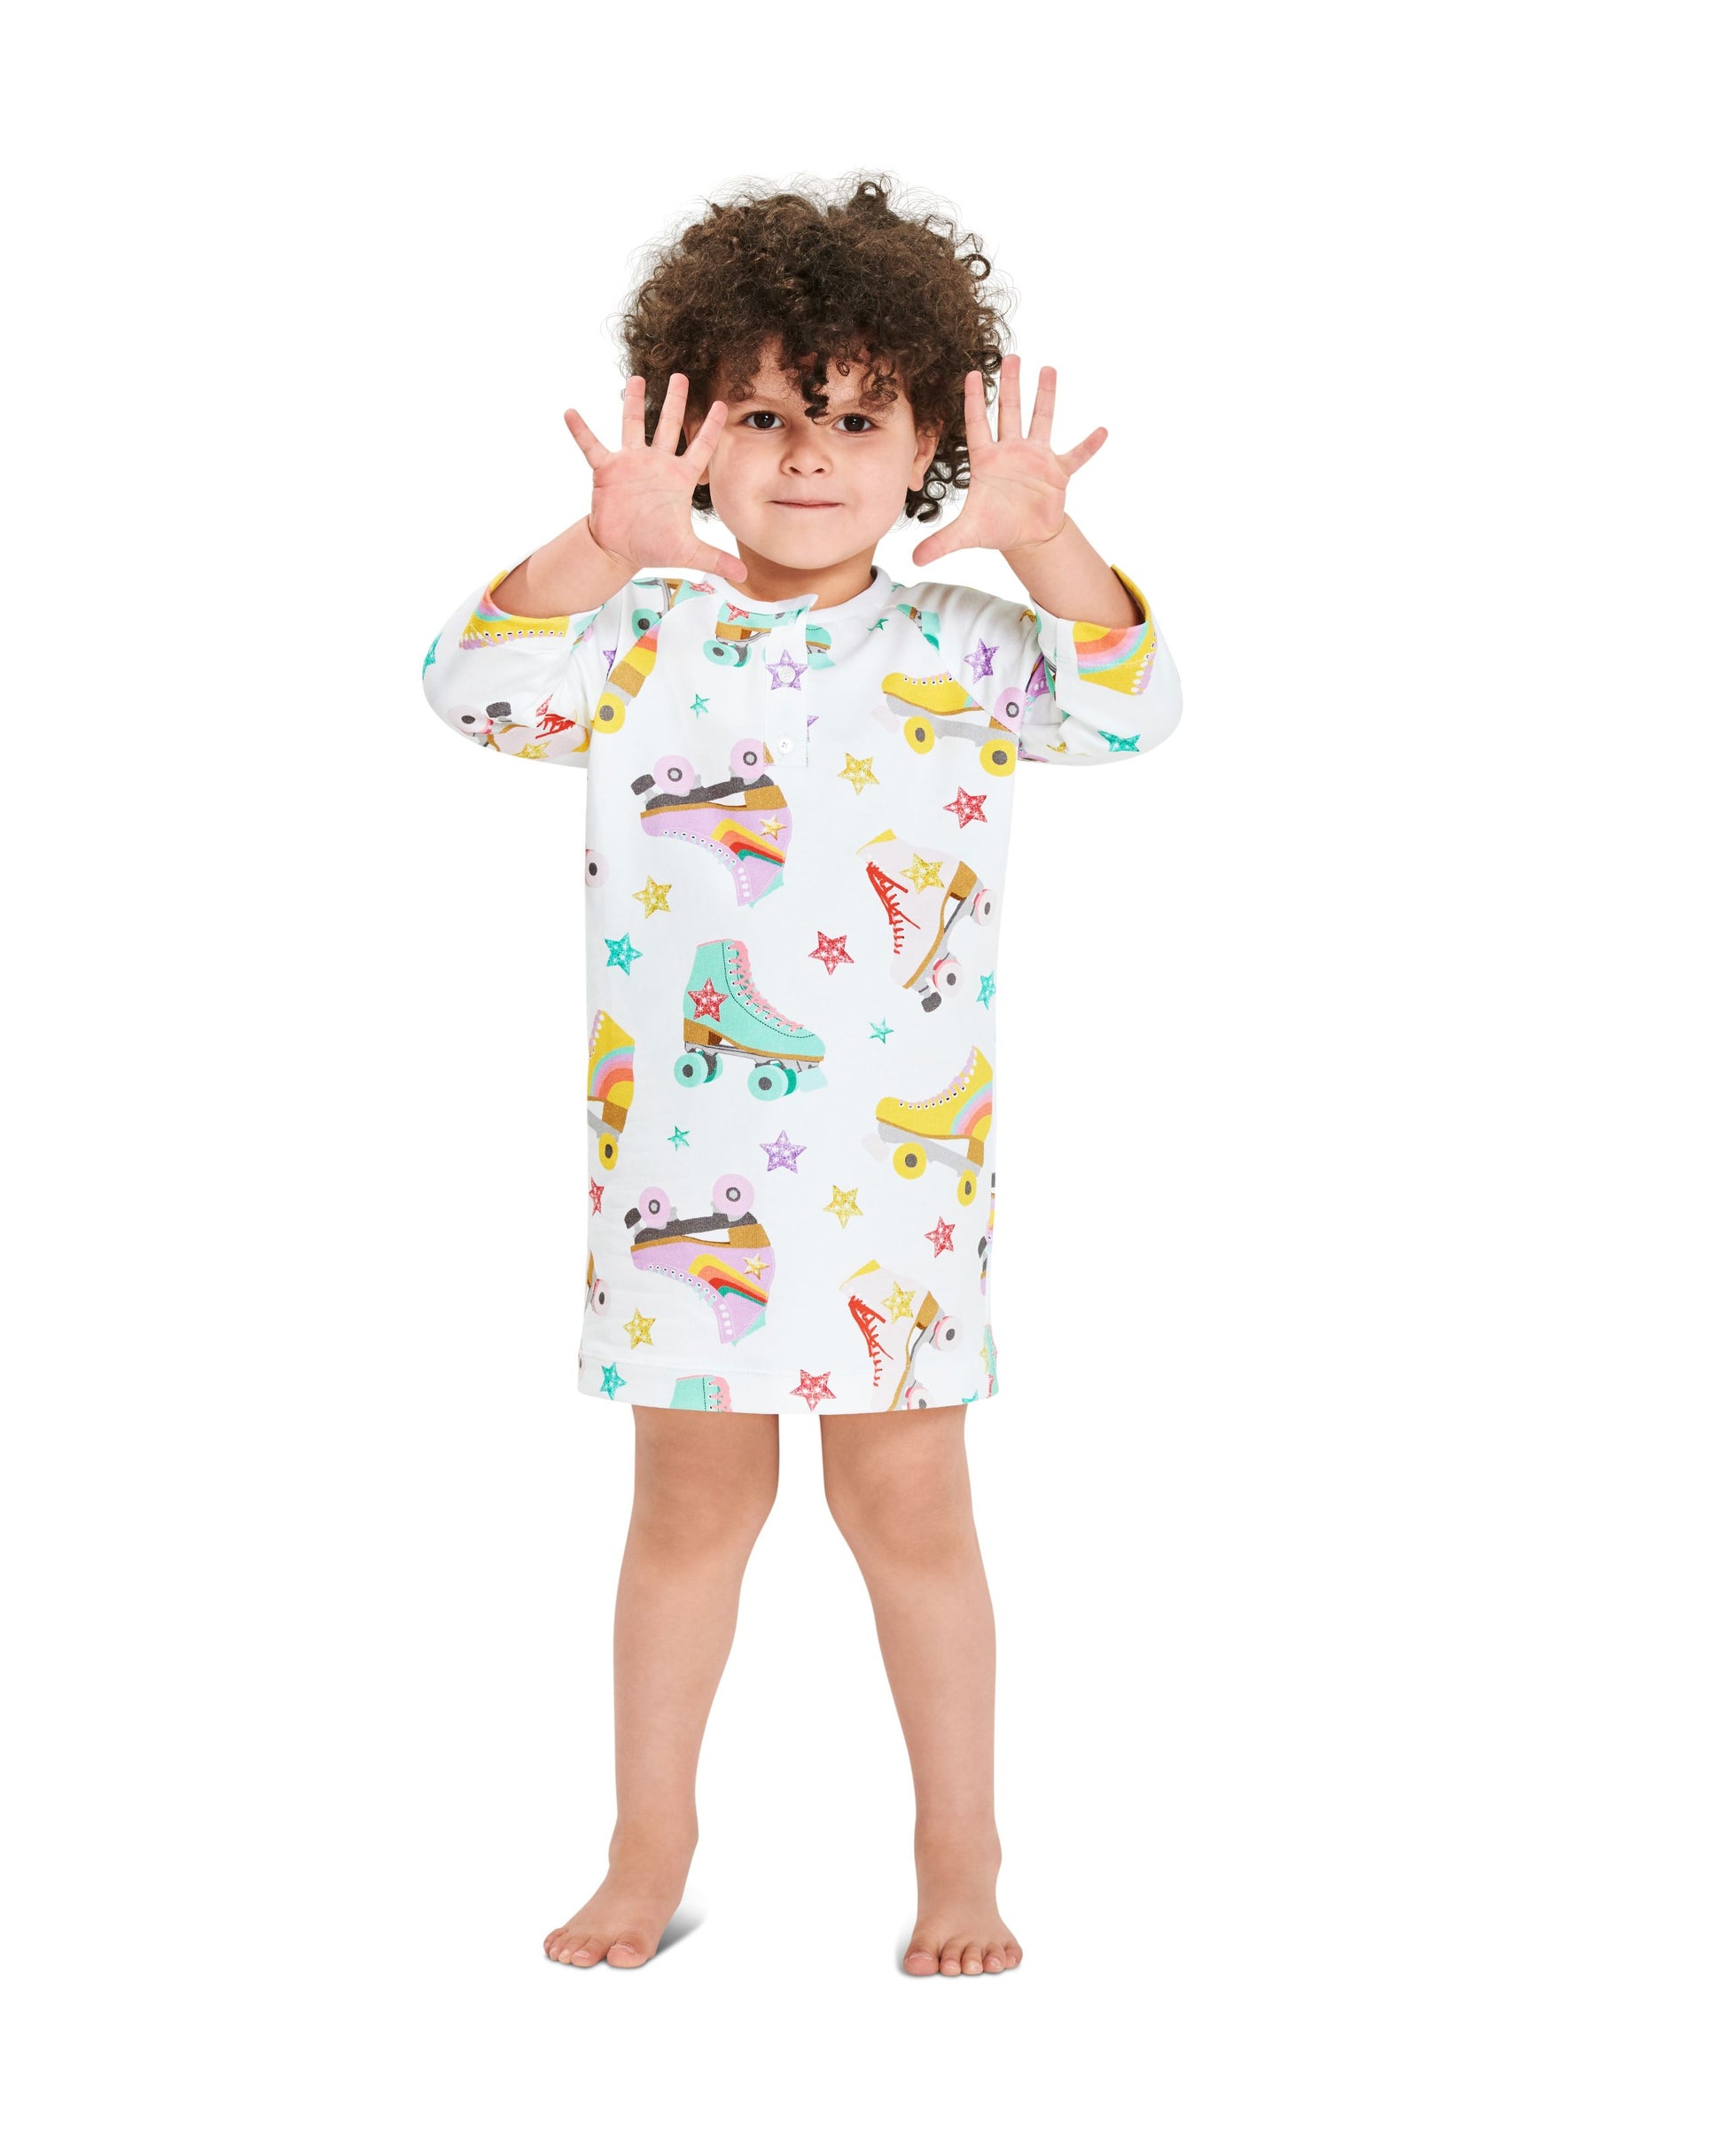 Symönster Burda 9284 - Tröja Pyjamas - Flicka Pojke | Bild 4